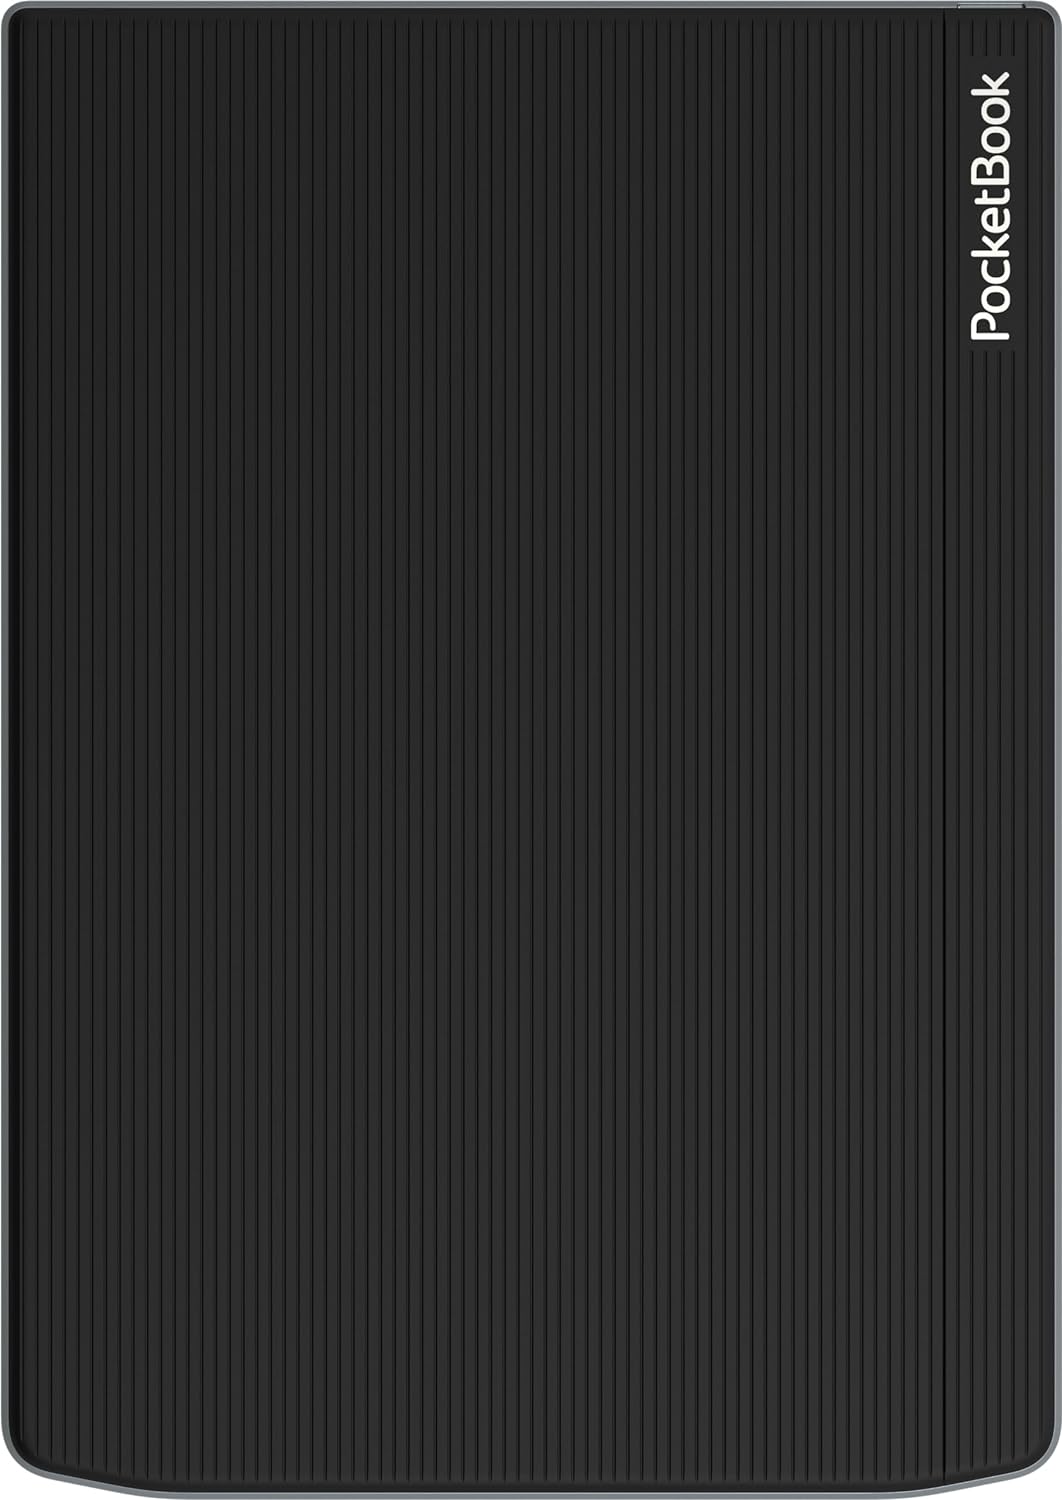 PocketBook InkPad Color 3: la pantalla a color de última generación y  prestaciones ilimitadas para leer y escuchar